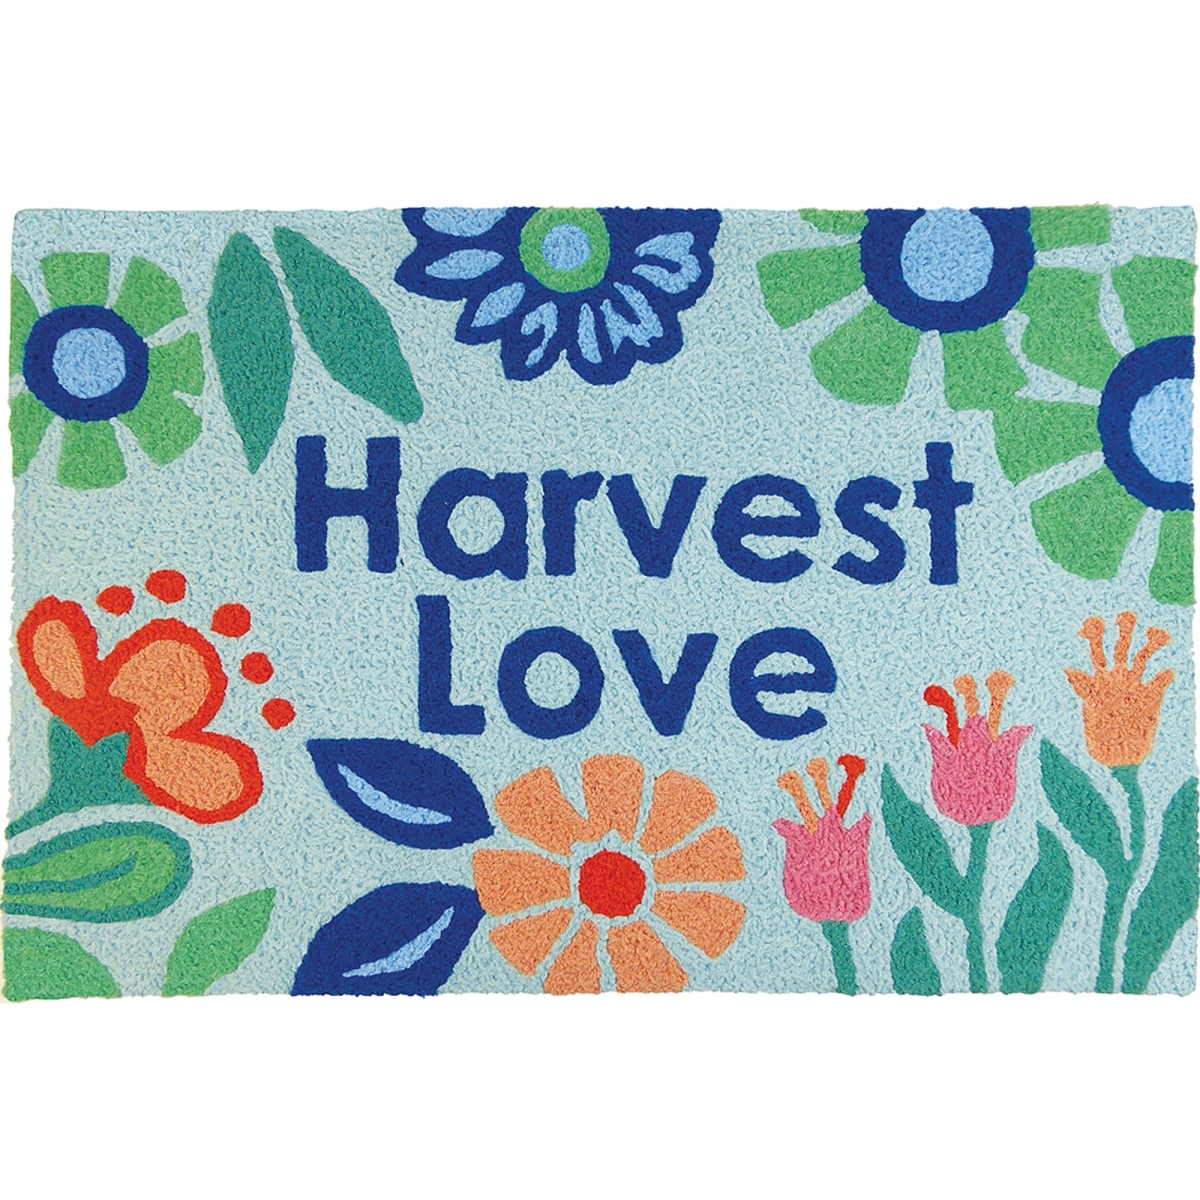 Jb-jb152 20 X 30 In. Harvest Love Rug